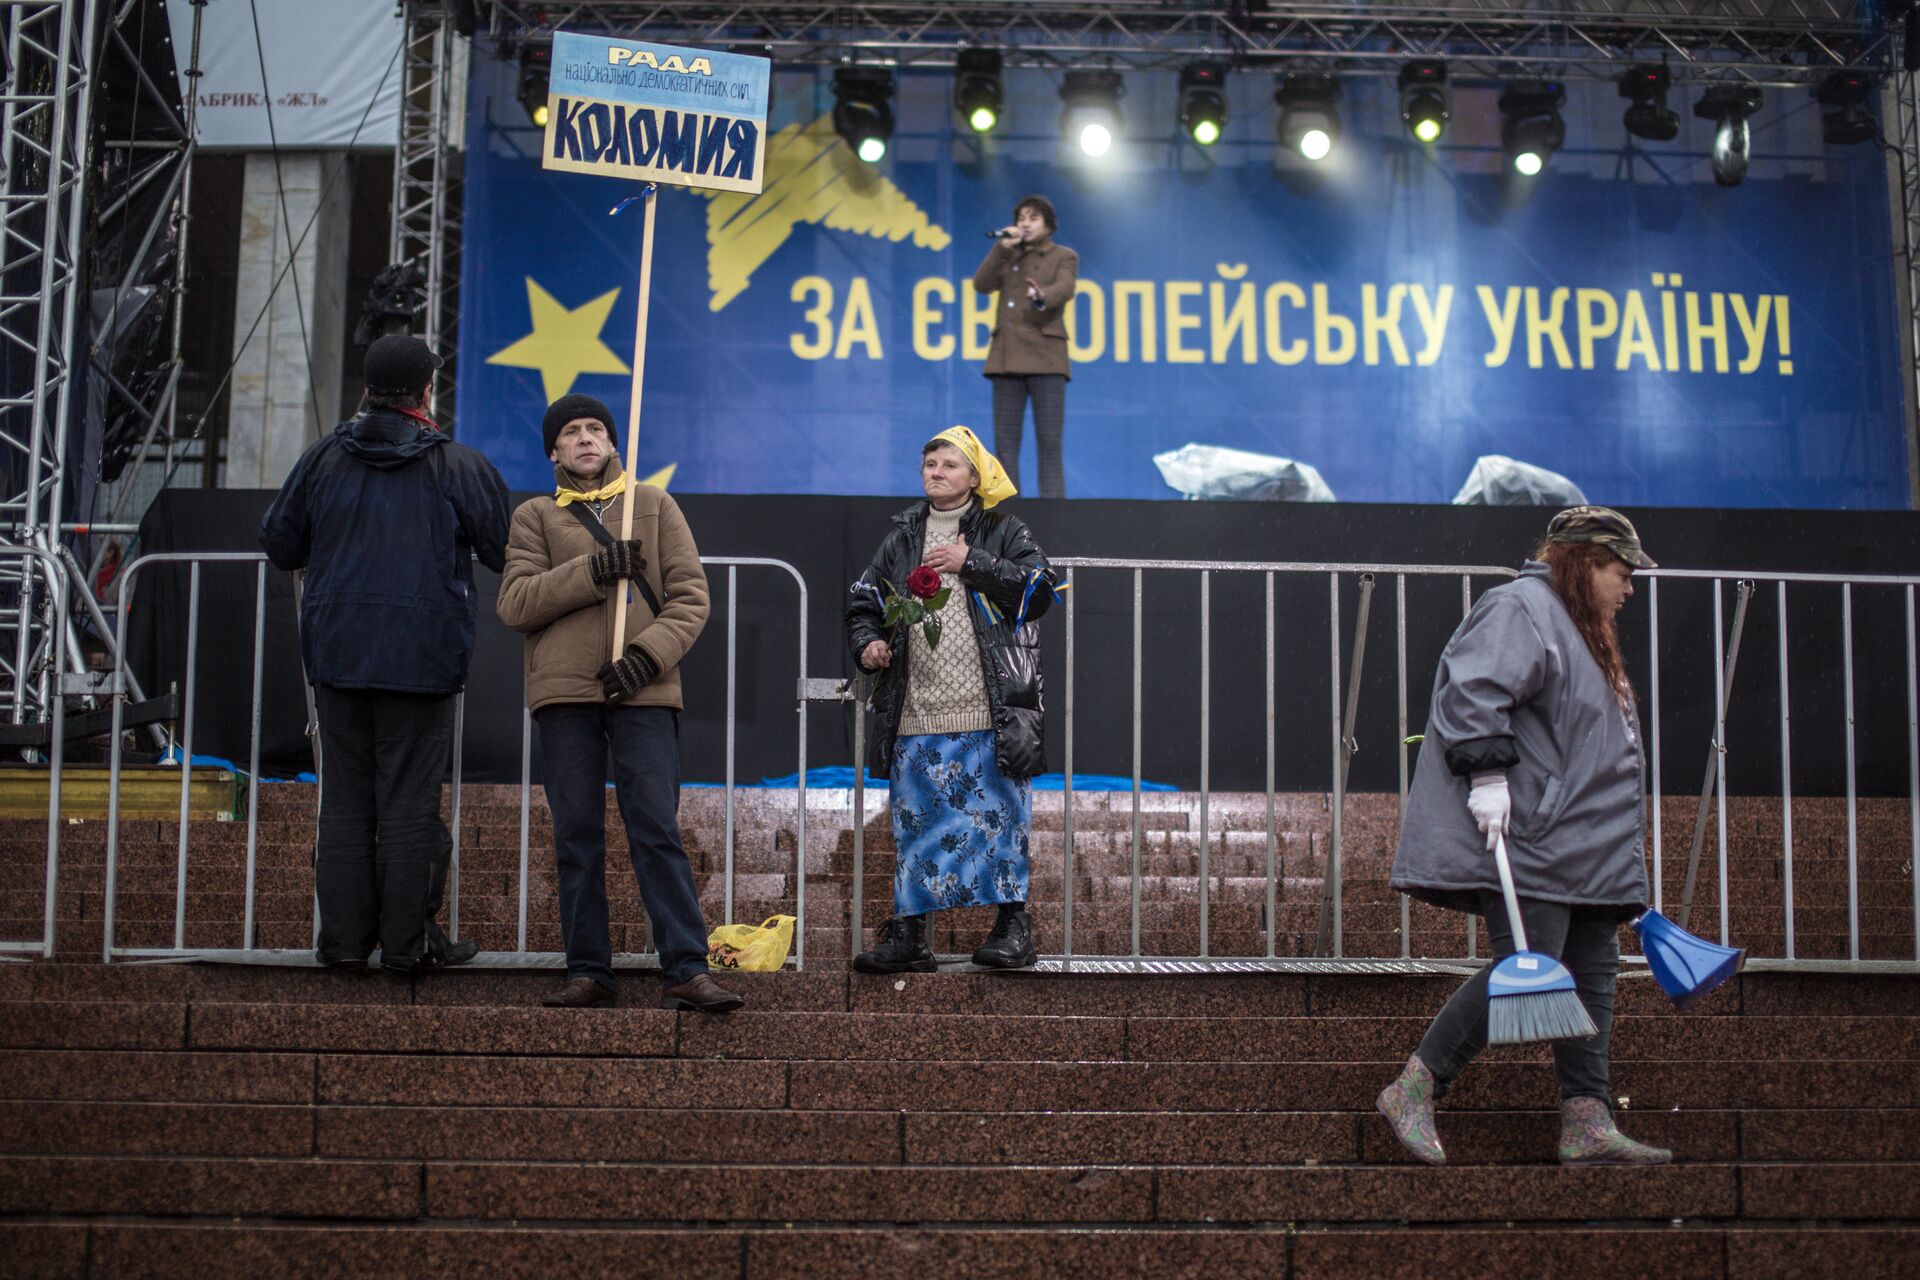 Сторонники евроинтеграции Украины около сцены на Европейской площади в Киеве. 25 января 2013 - РИА Новости, 1920, 13.05.2022